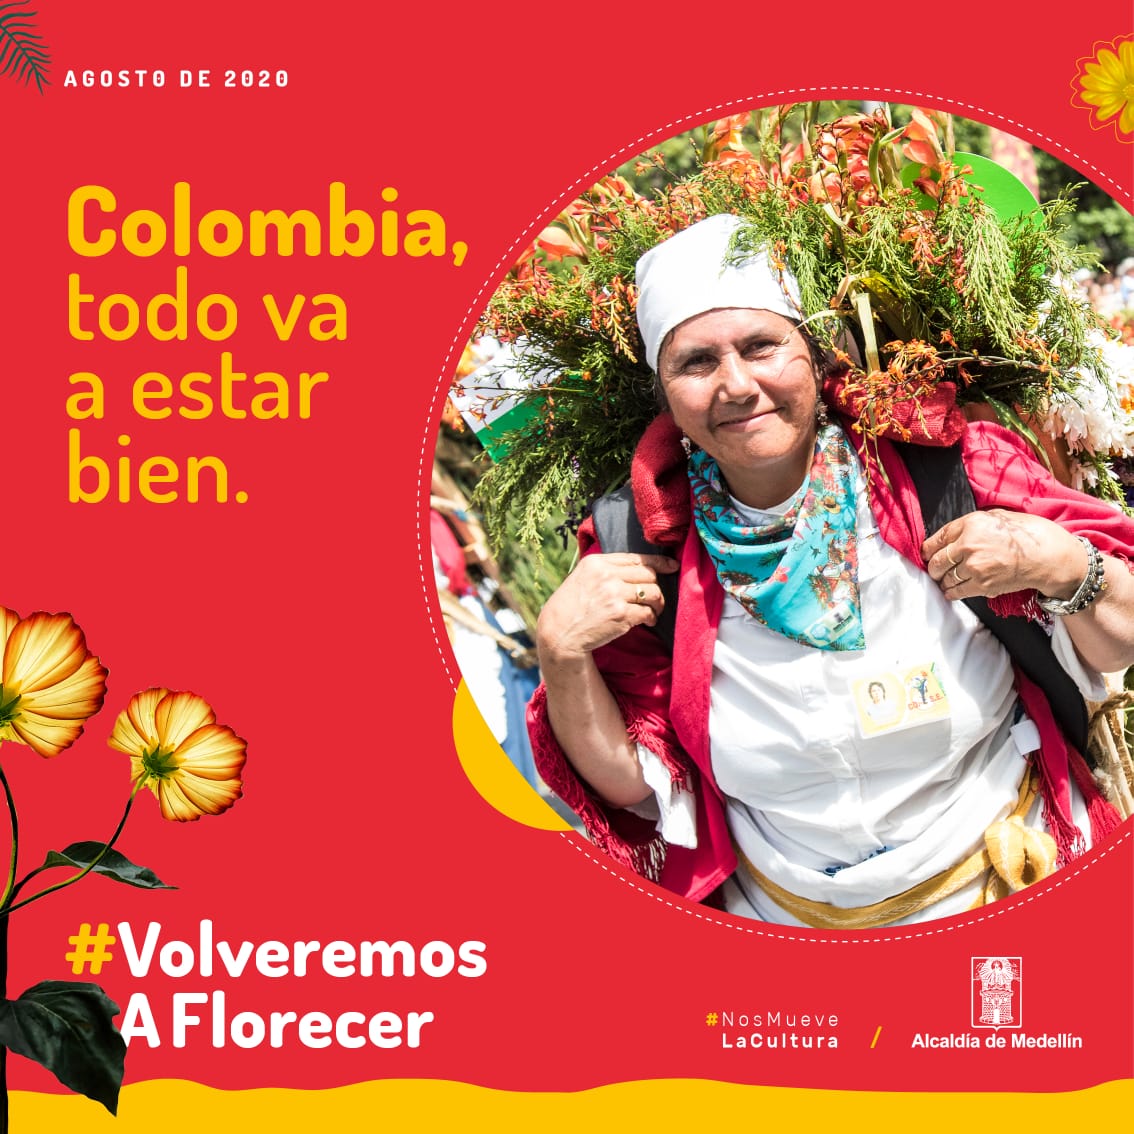 Silleta-Risaralda #VolveremosAFlorecer, la iniciativa que lleva el arte de las silletas al personal médico de Colombia